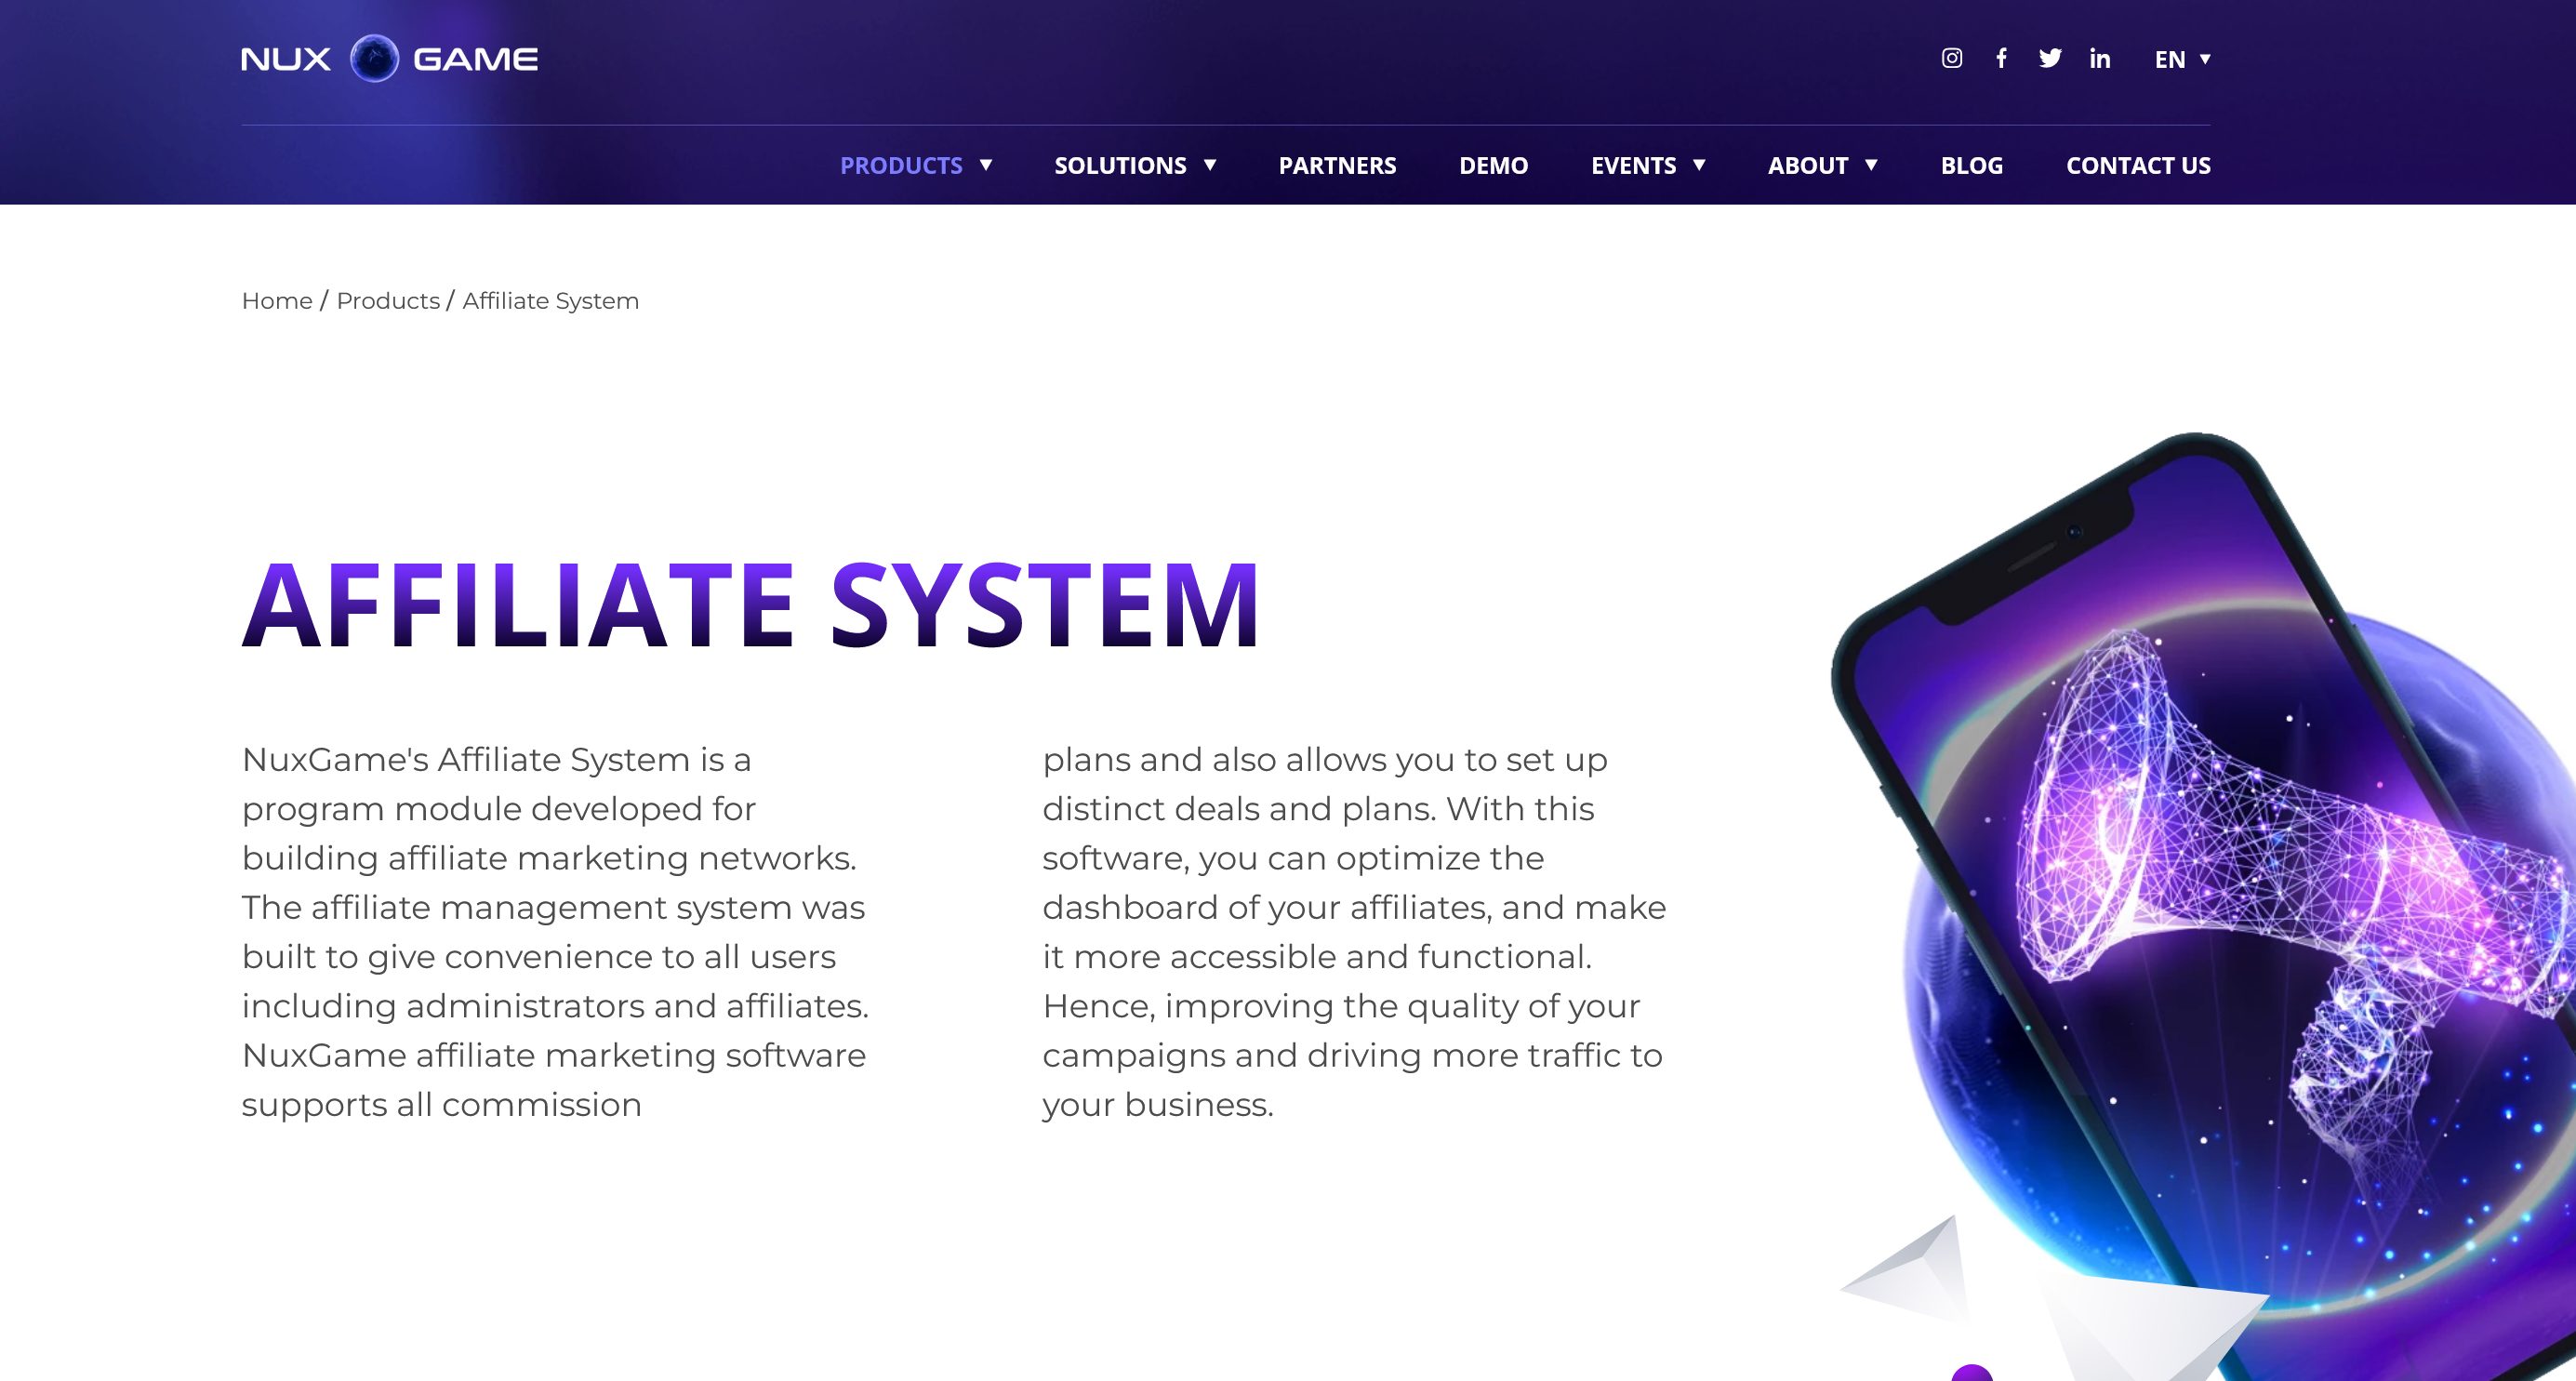 NuxGame アフィリエイト システムは、アフィリエイト マーケティング ネットワークを作成するために設計されたプログラム モジュールです。